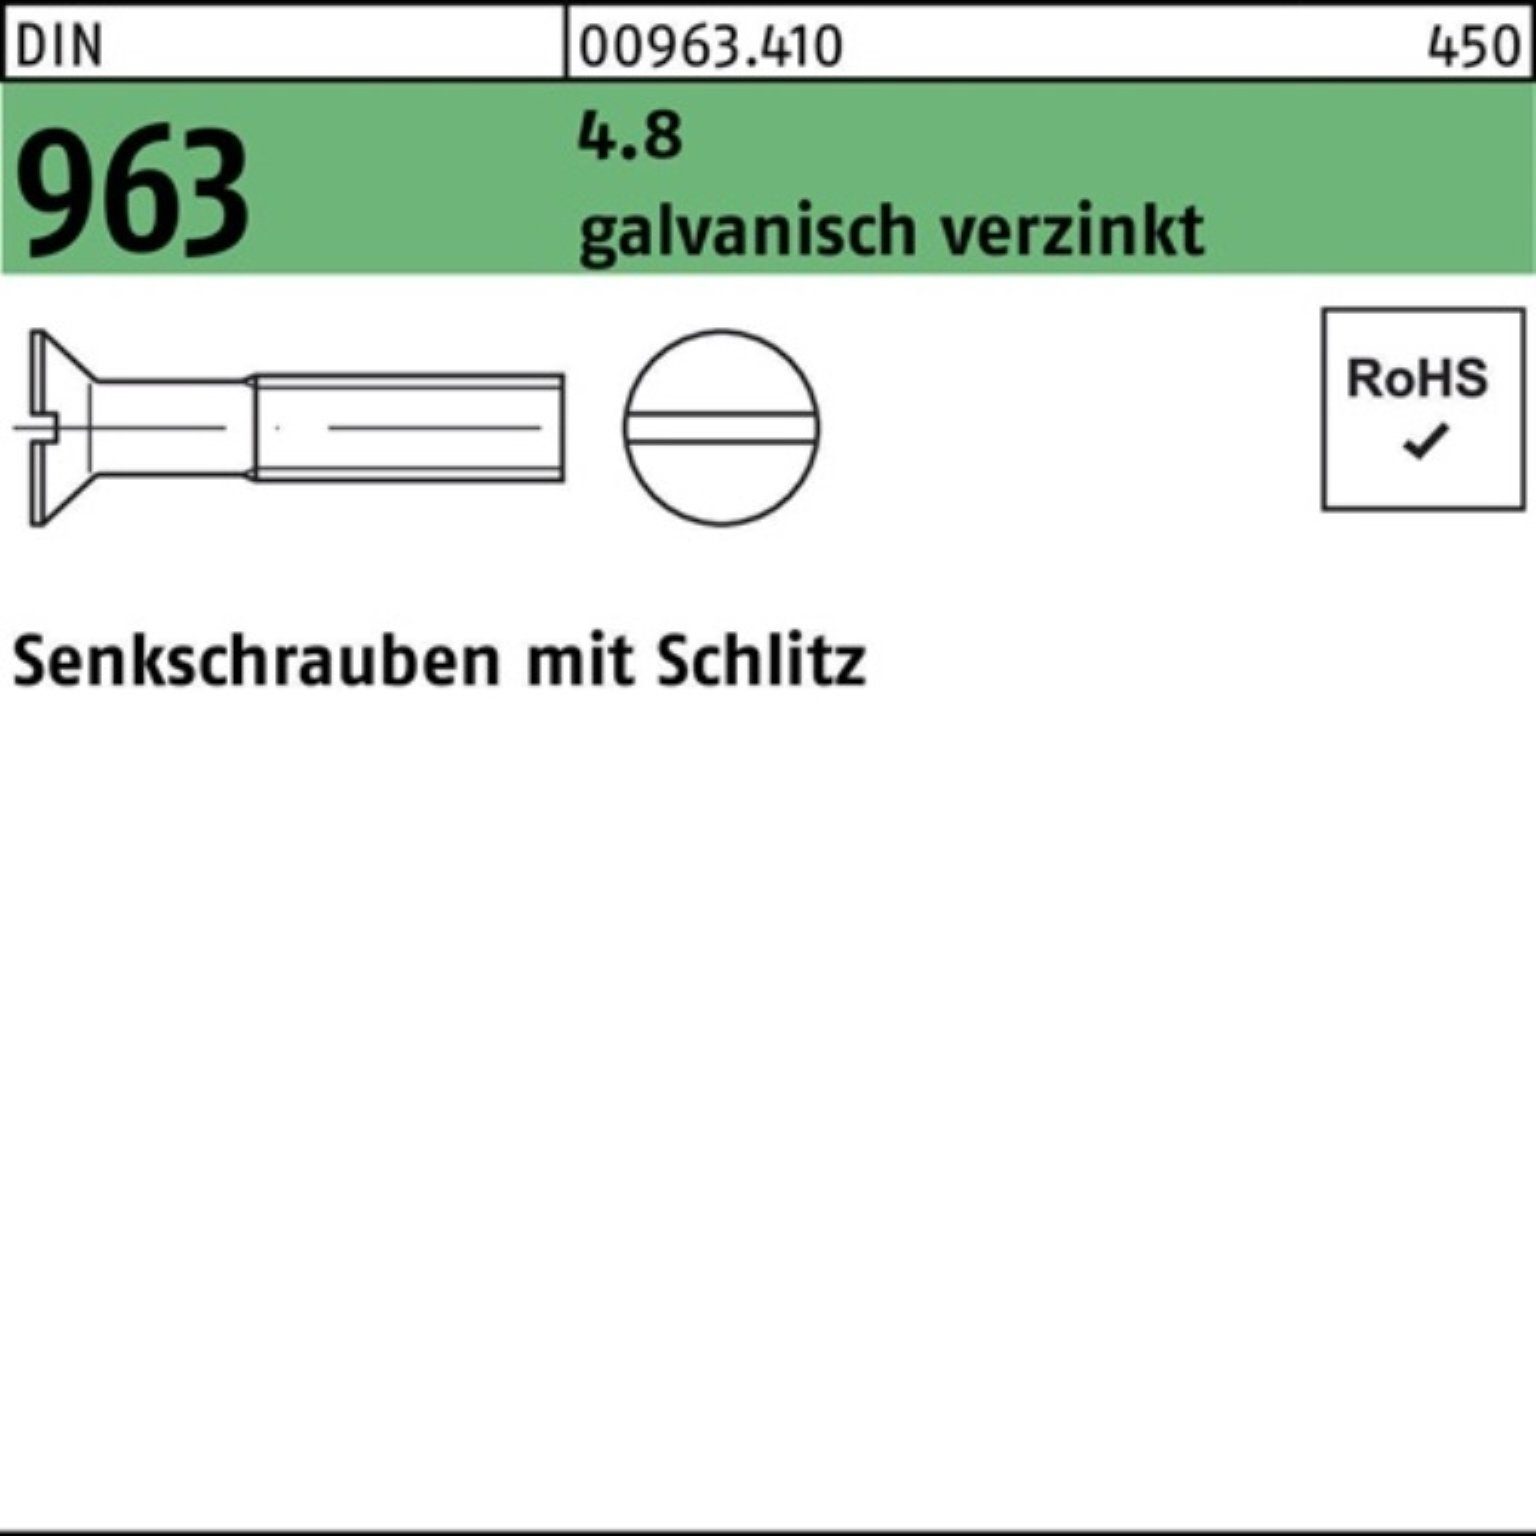 Senkschraube 963 M2x 200er Reyher Senkschraube Schlitz Pack 4.8 5 Stüc DIN galv.verz. 200